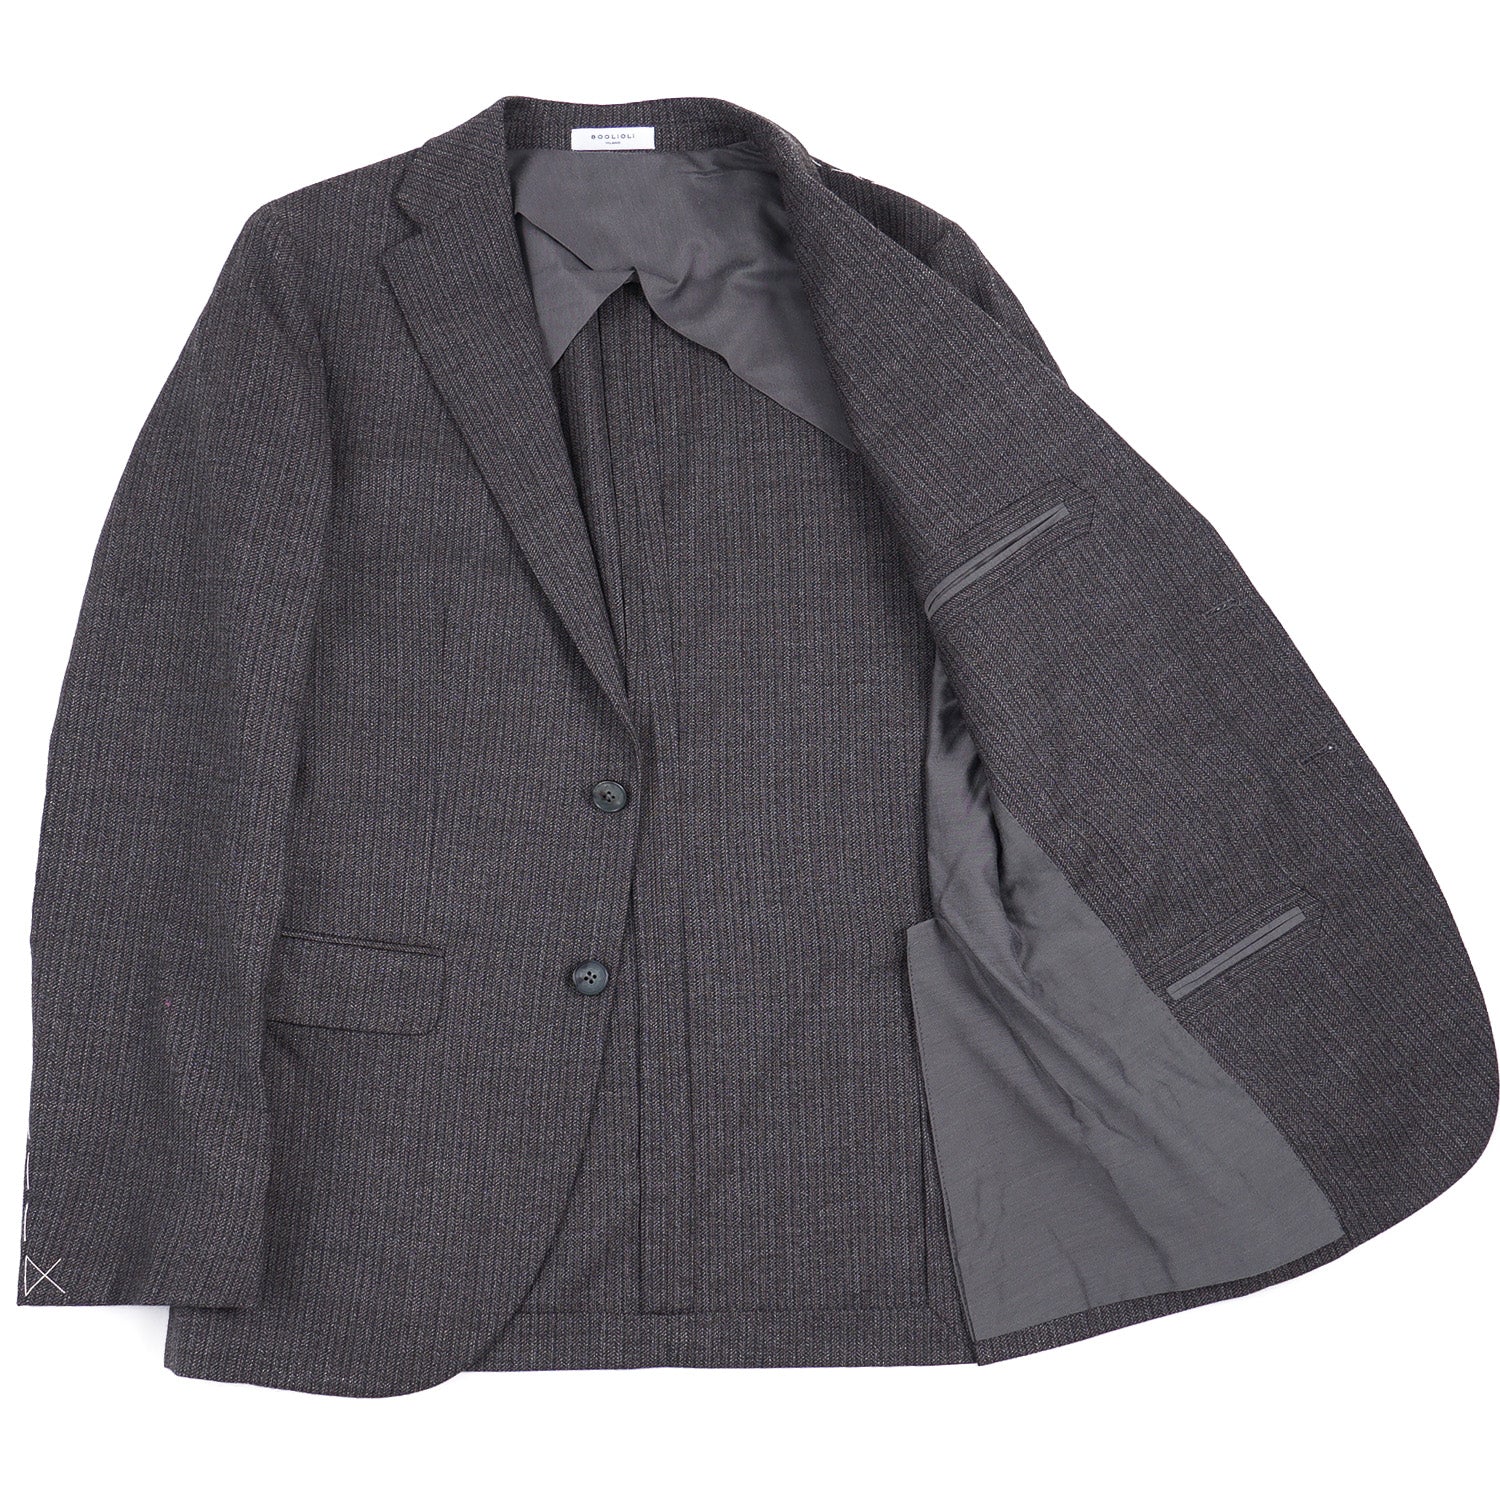 Boglioli Patterned Wool 'K Jacket' Suit – Top Shelf Apparel